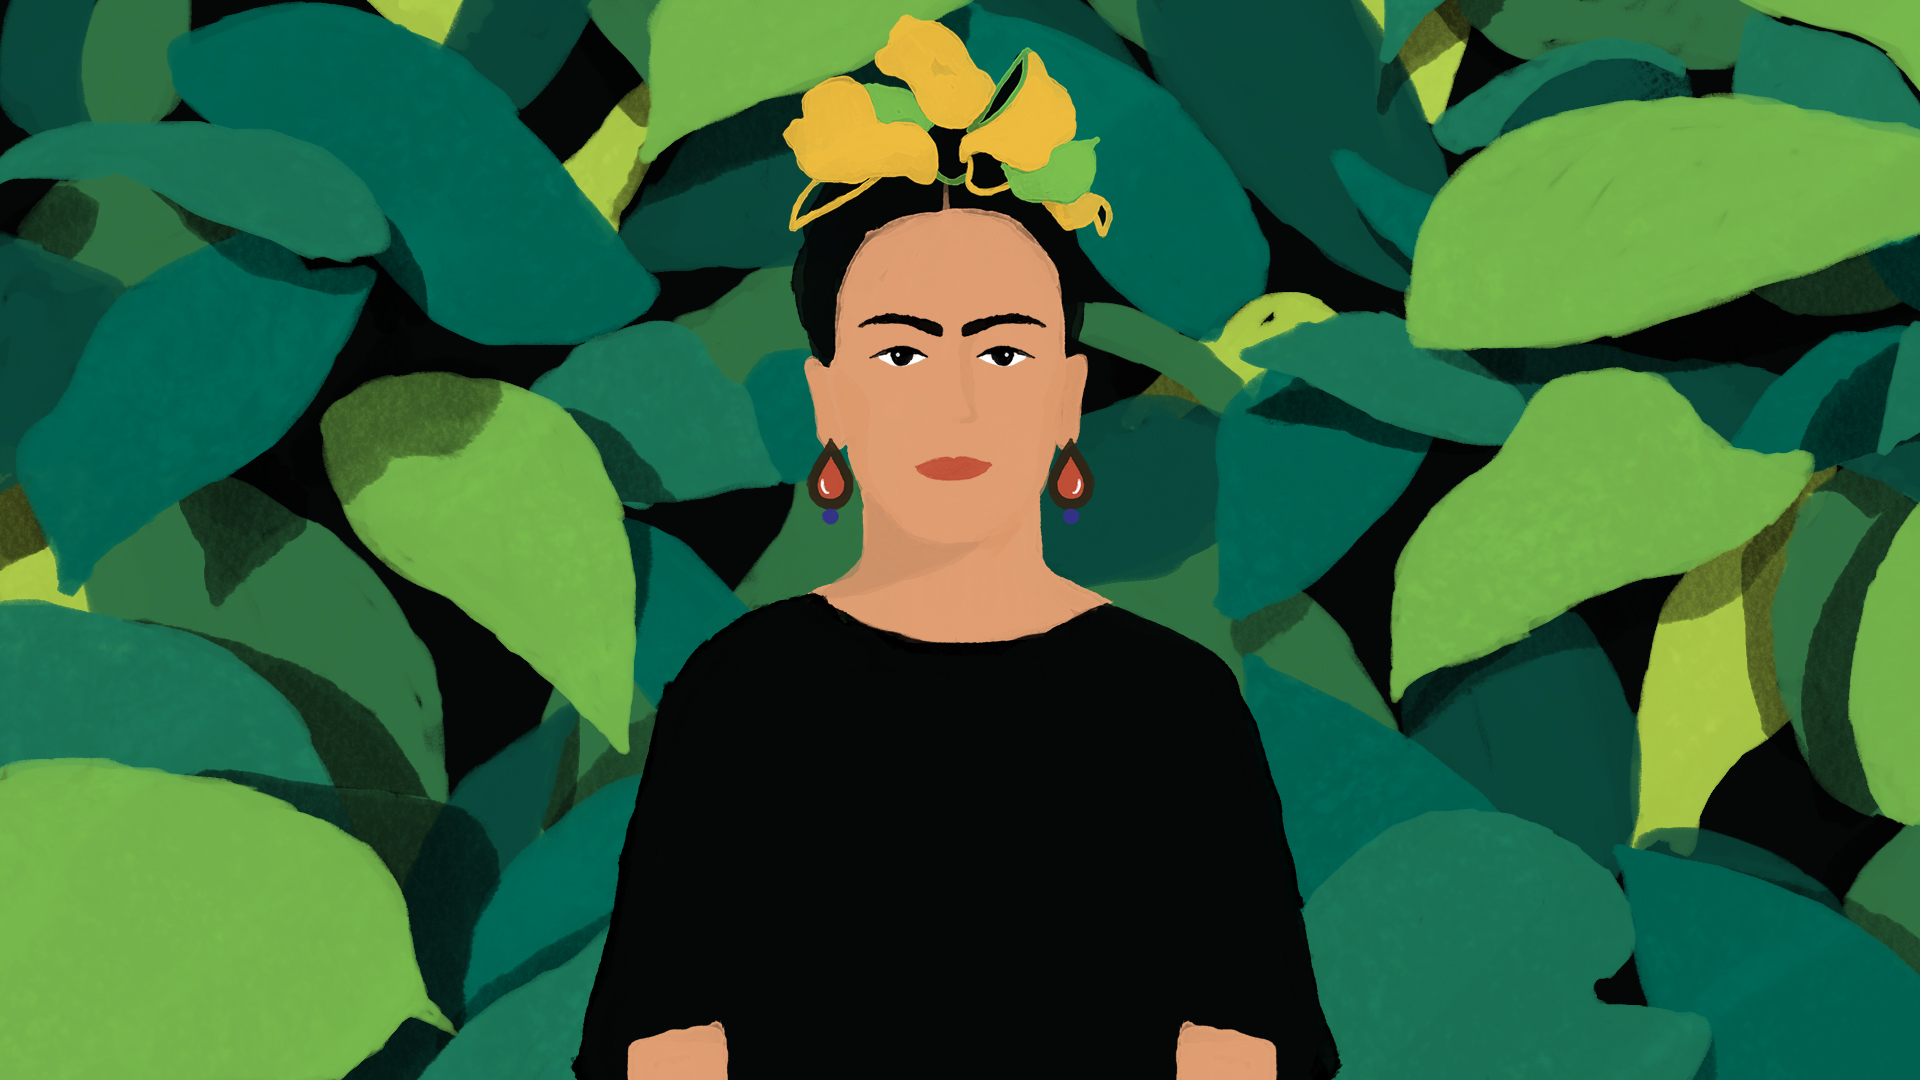 Ilustração colorida de Frida Kahlo, uma mulher com um cocar, está em frente a uma imagem de folhas verdes